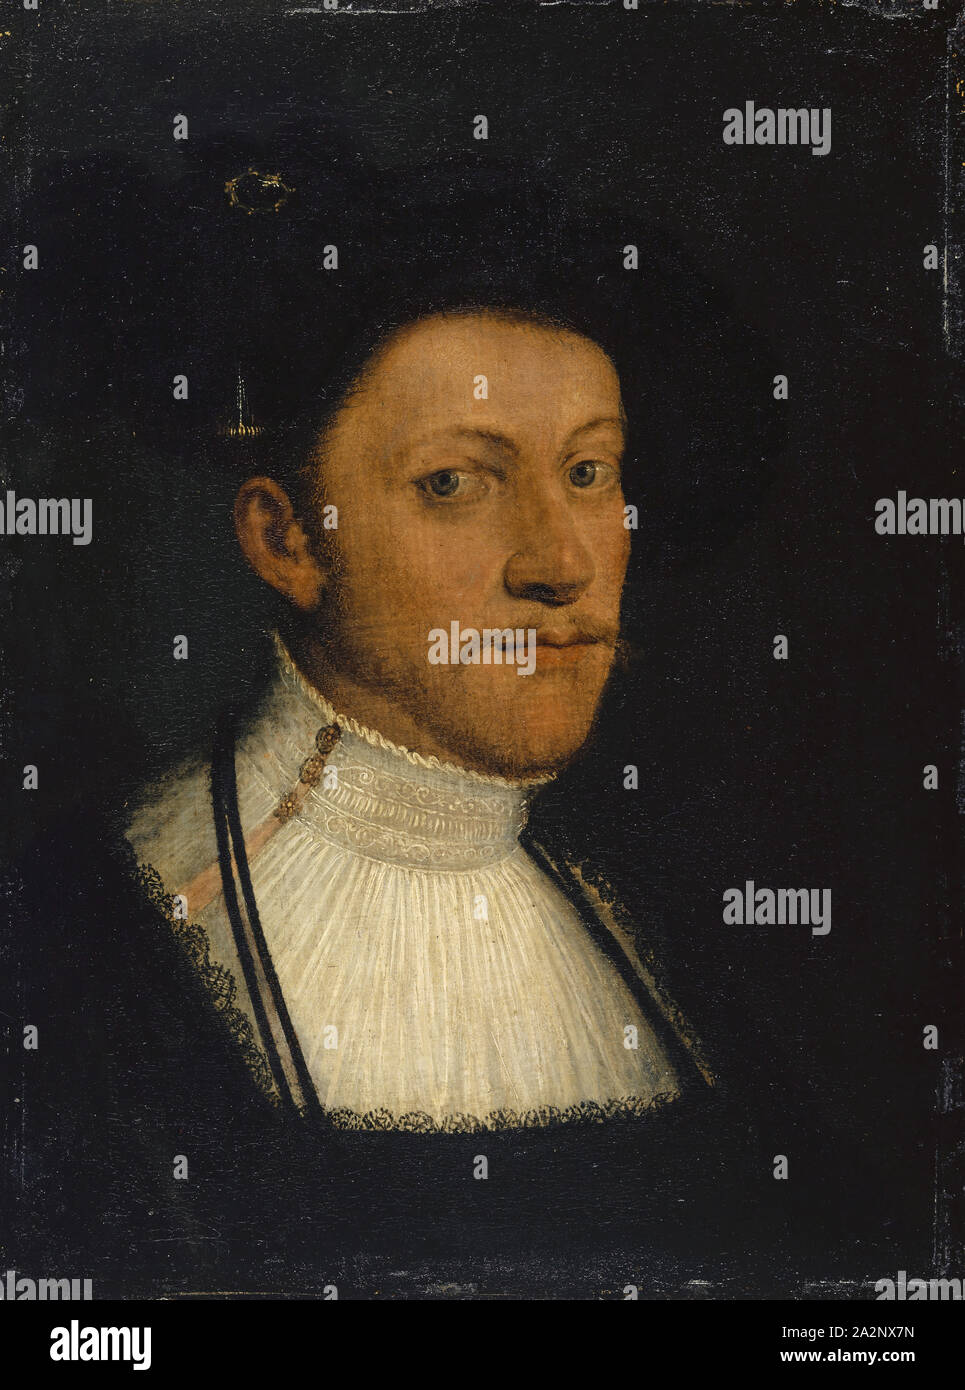 Ritratto di Filippo il magnanimo di Hesse, olio su tela montata su legno di conifera, 52 x 39 cm, non segnato, Christoph Amberger, (l'arte / stile di), um 1505-1561/62 Augsburg Foto Stock